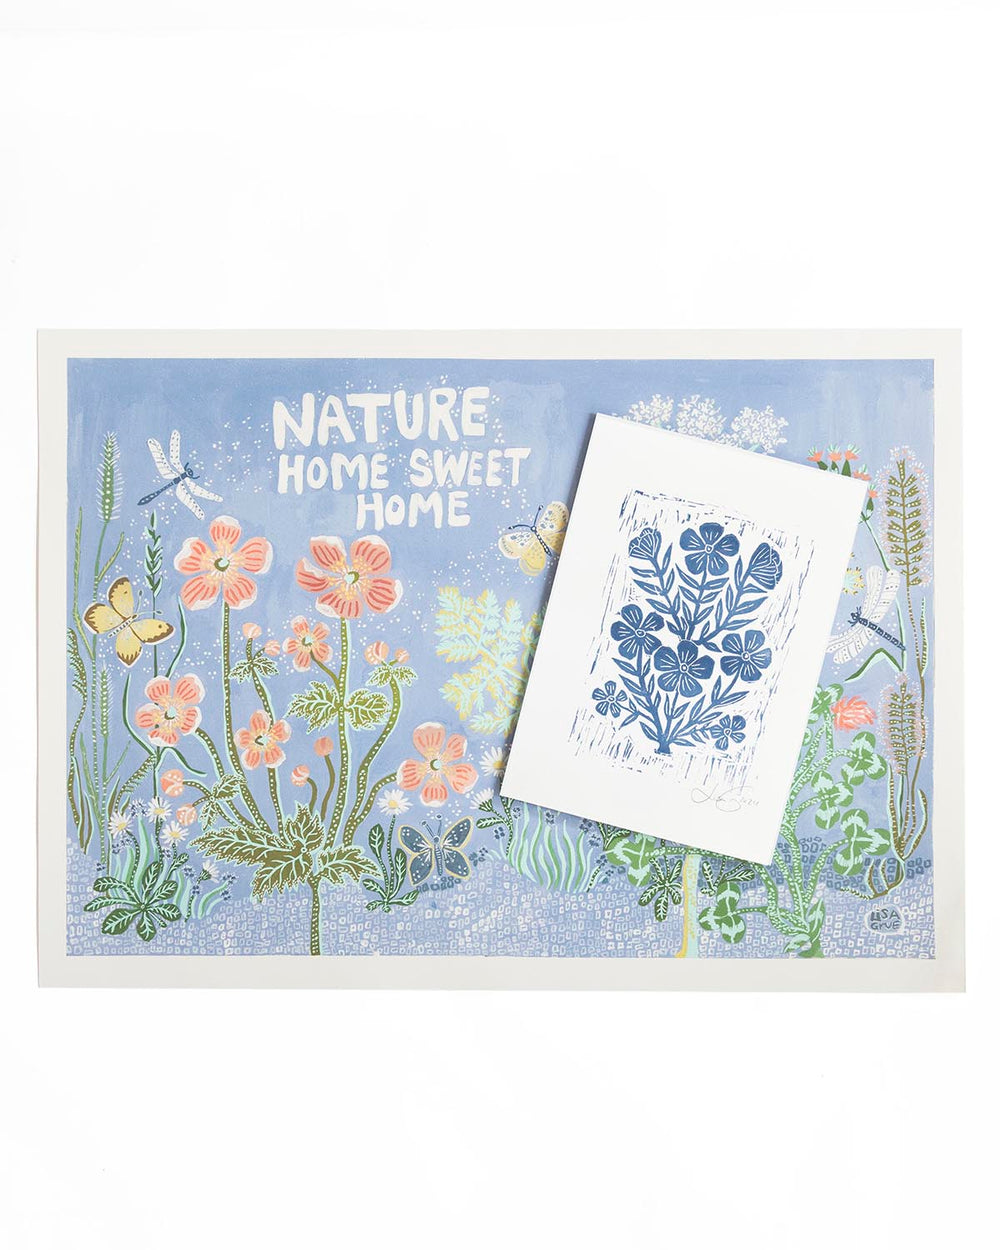 Nature - Home sweet home